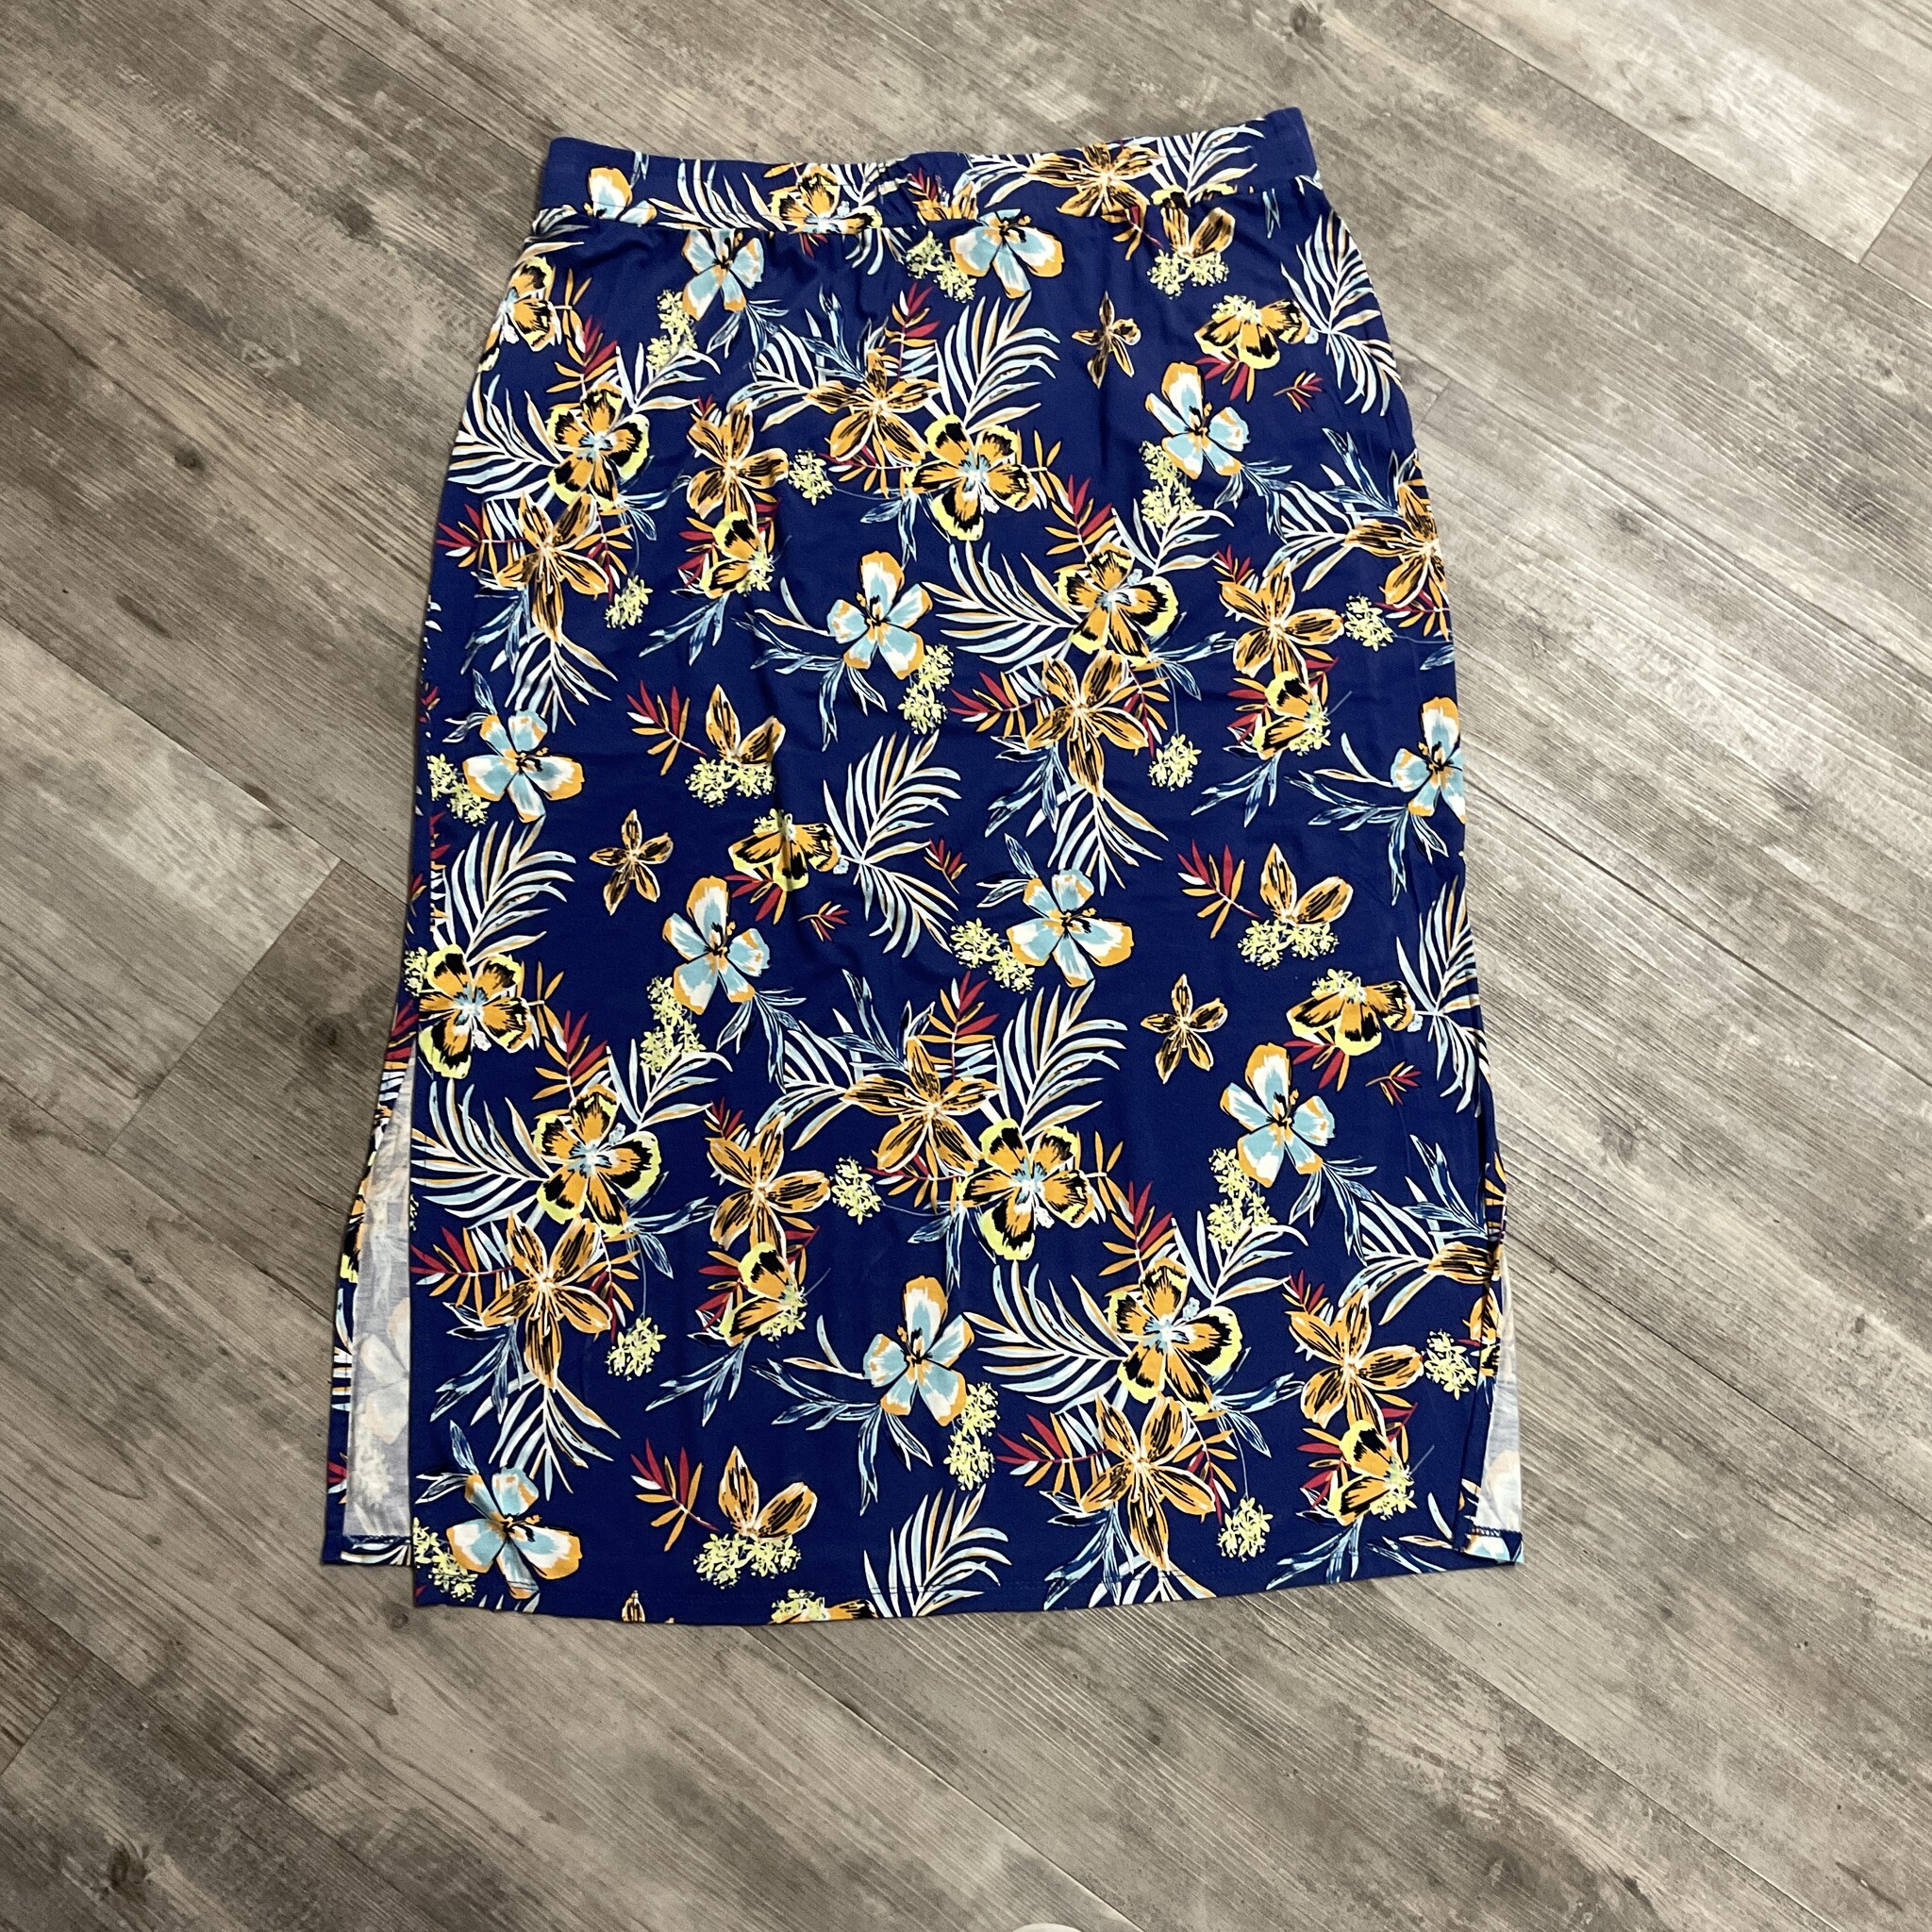 Summer Print Maxi Skirt Size XL